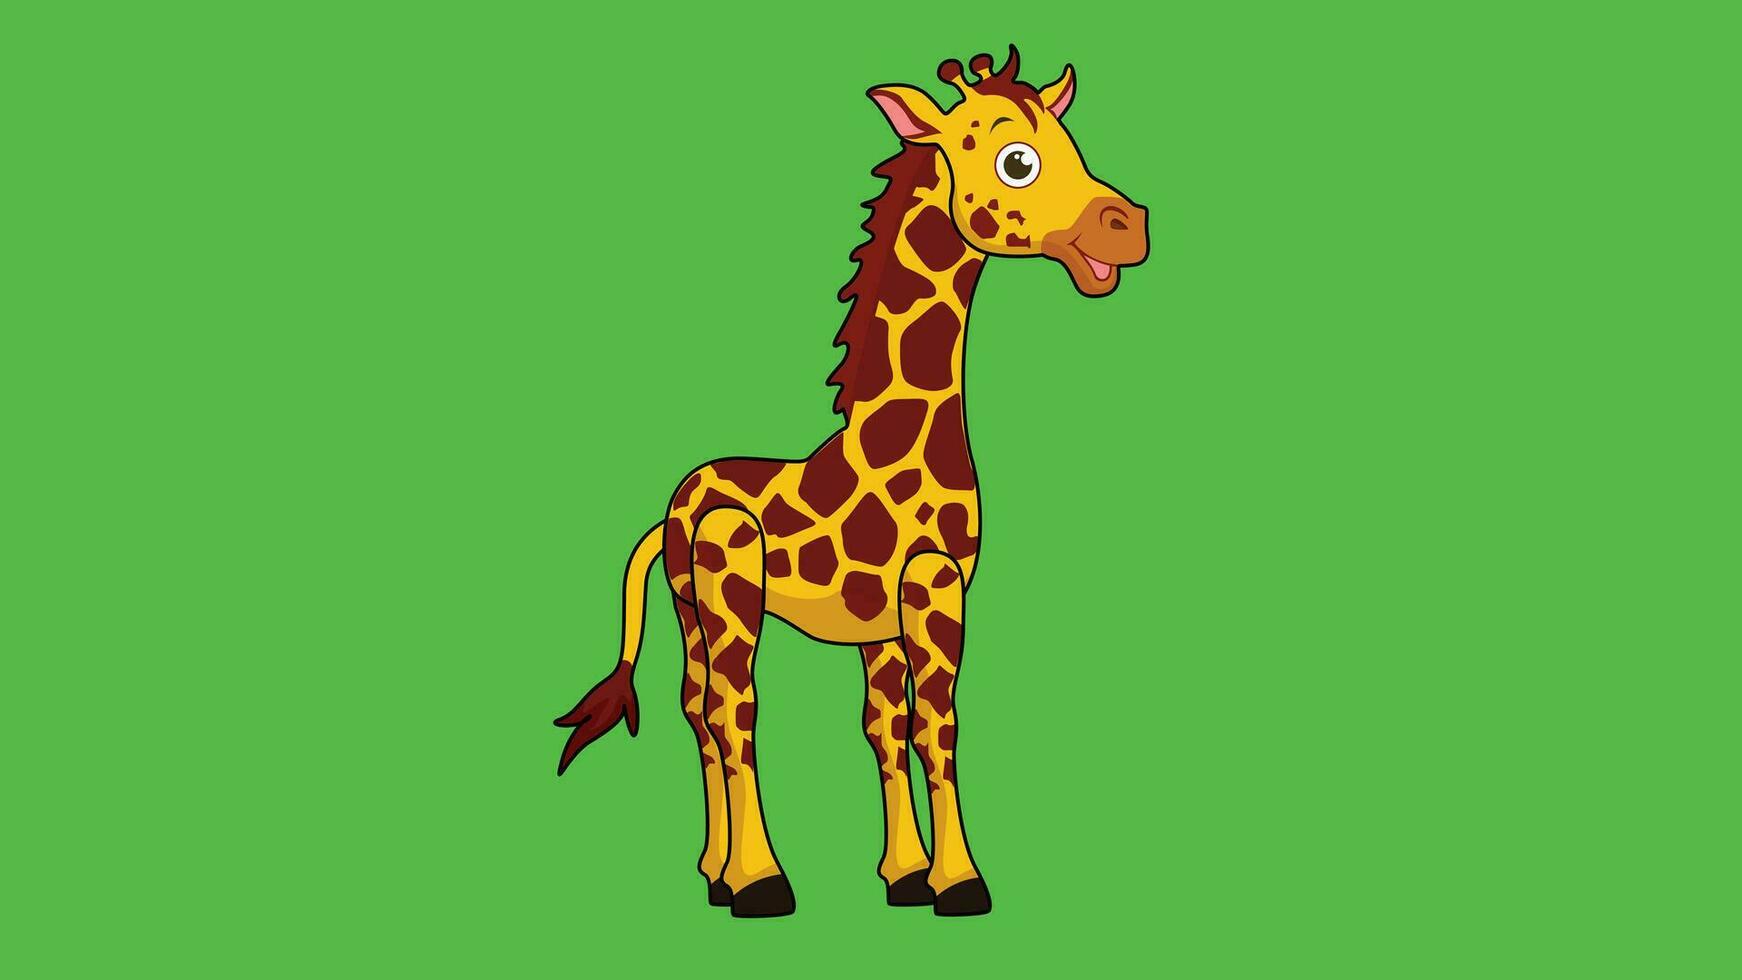 een schattig giraffe vector is ontworpen met een geel gevlekte patroon. getrokken door lijnen en gekleurd.